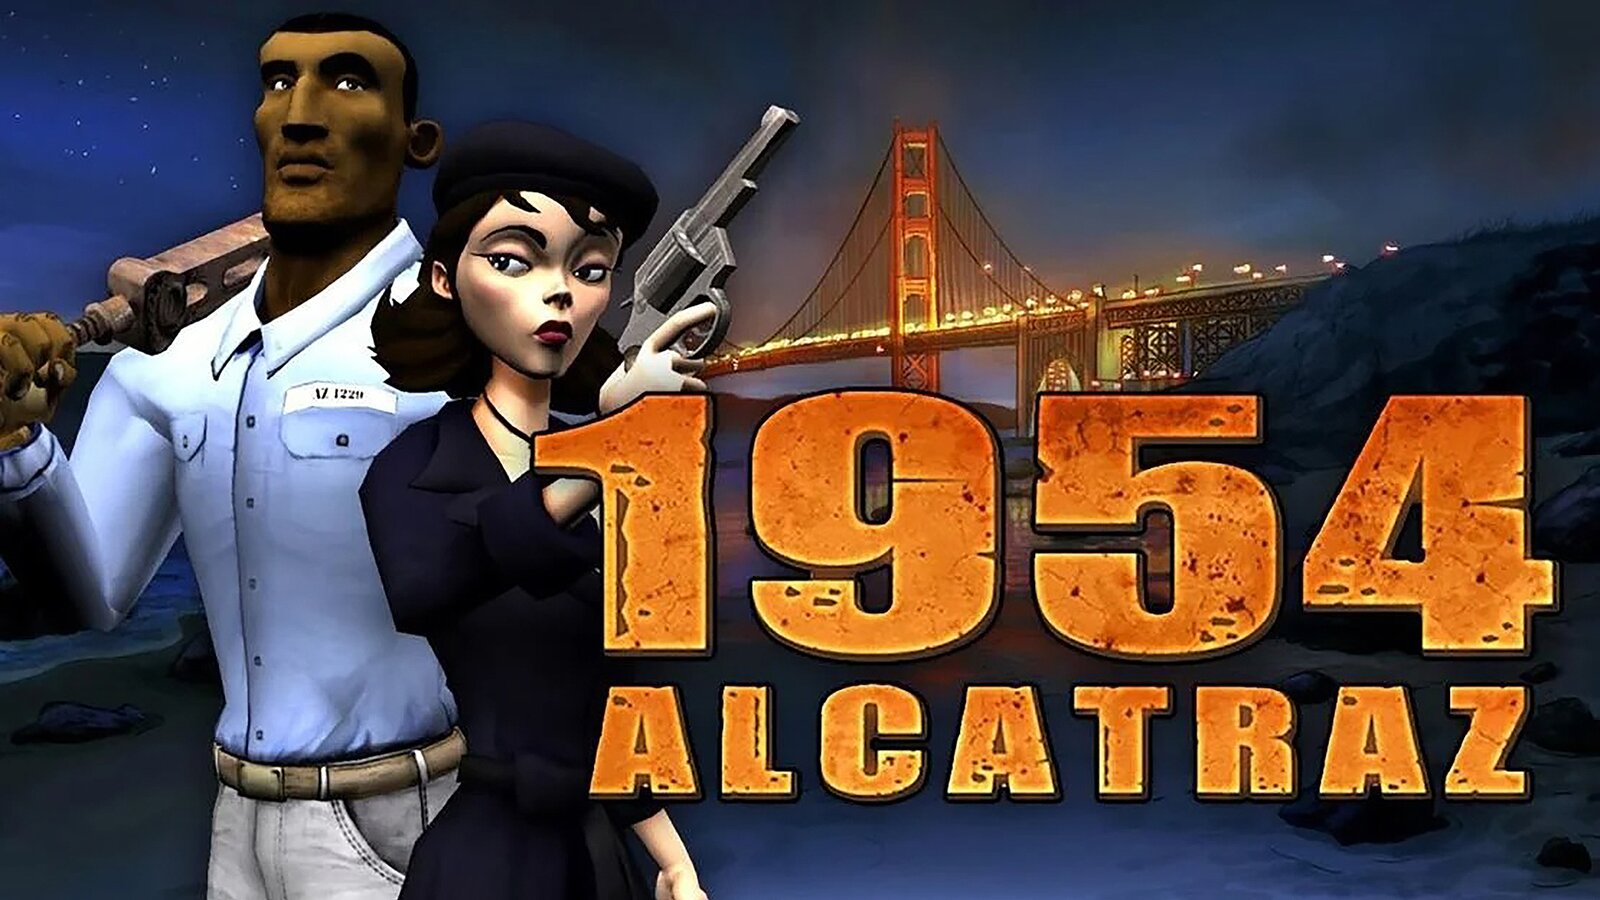 1954 Alcatraz